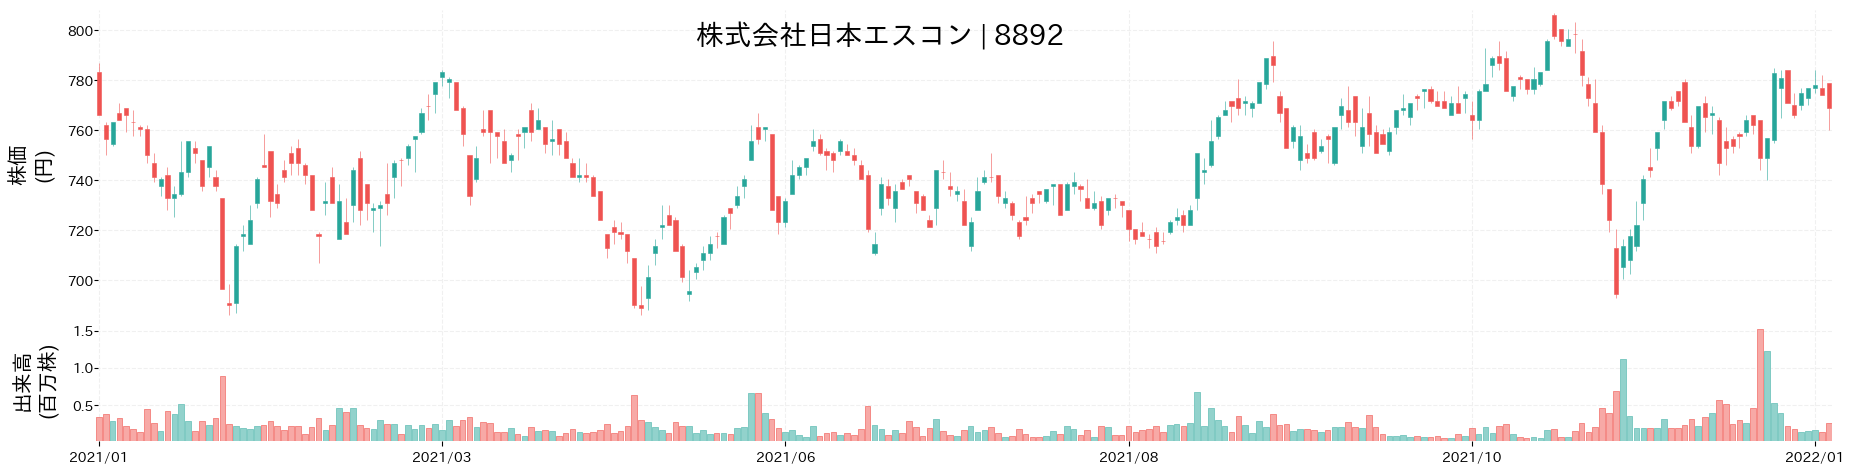 日本エスコンの株価推移(2021)